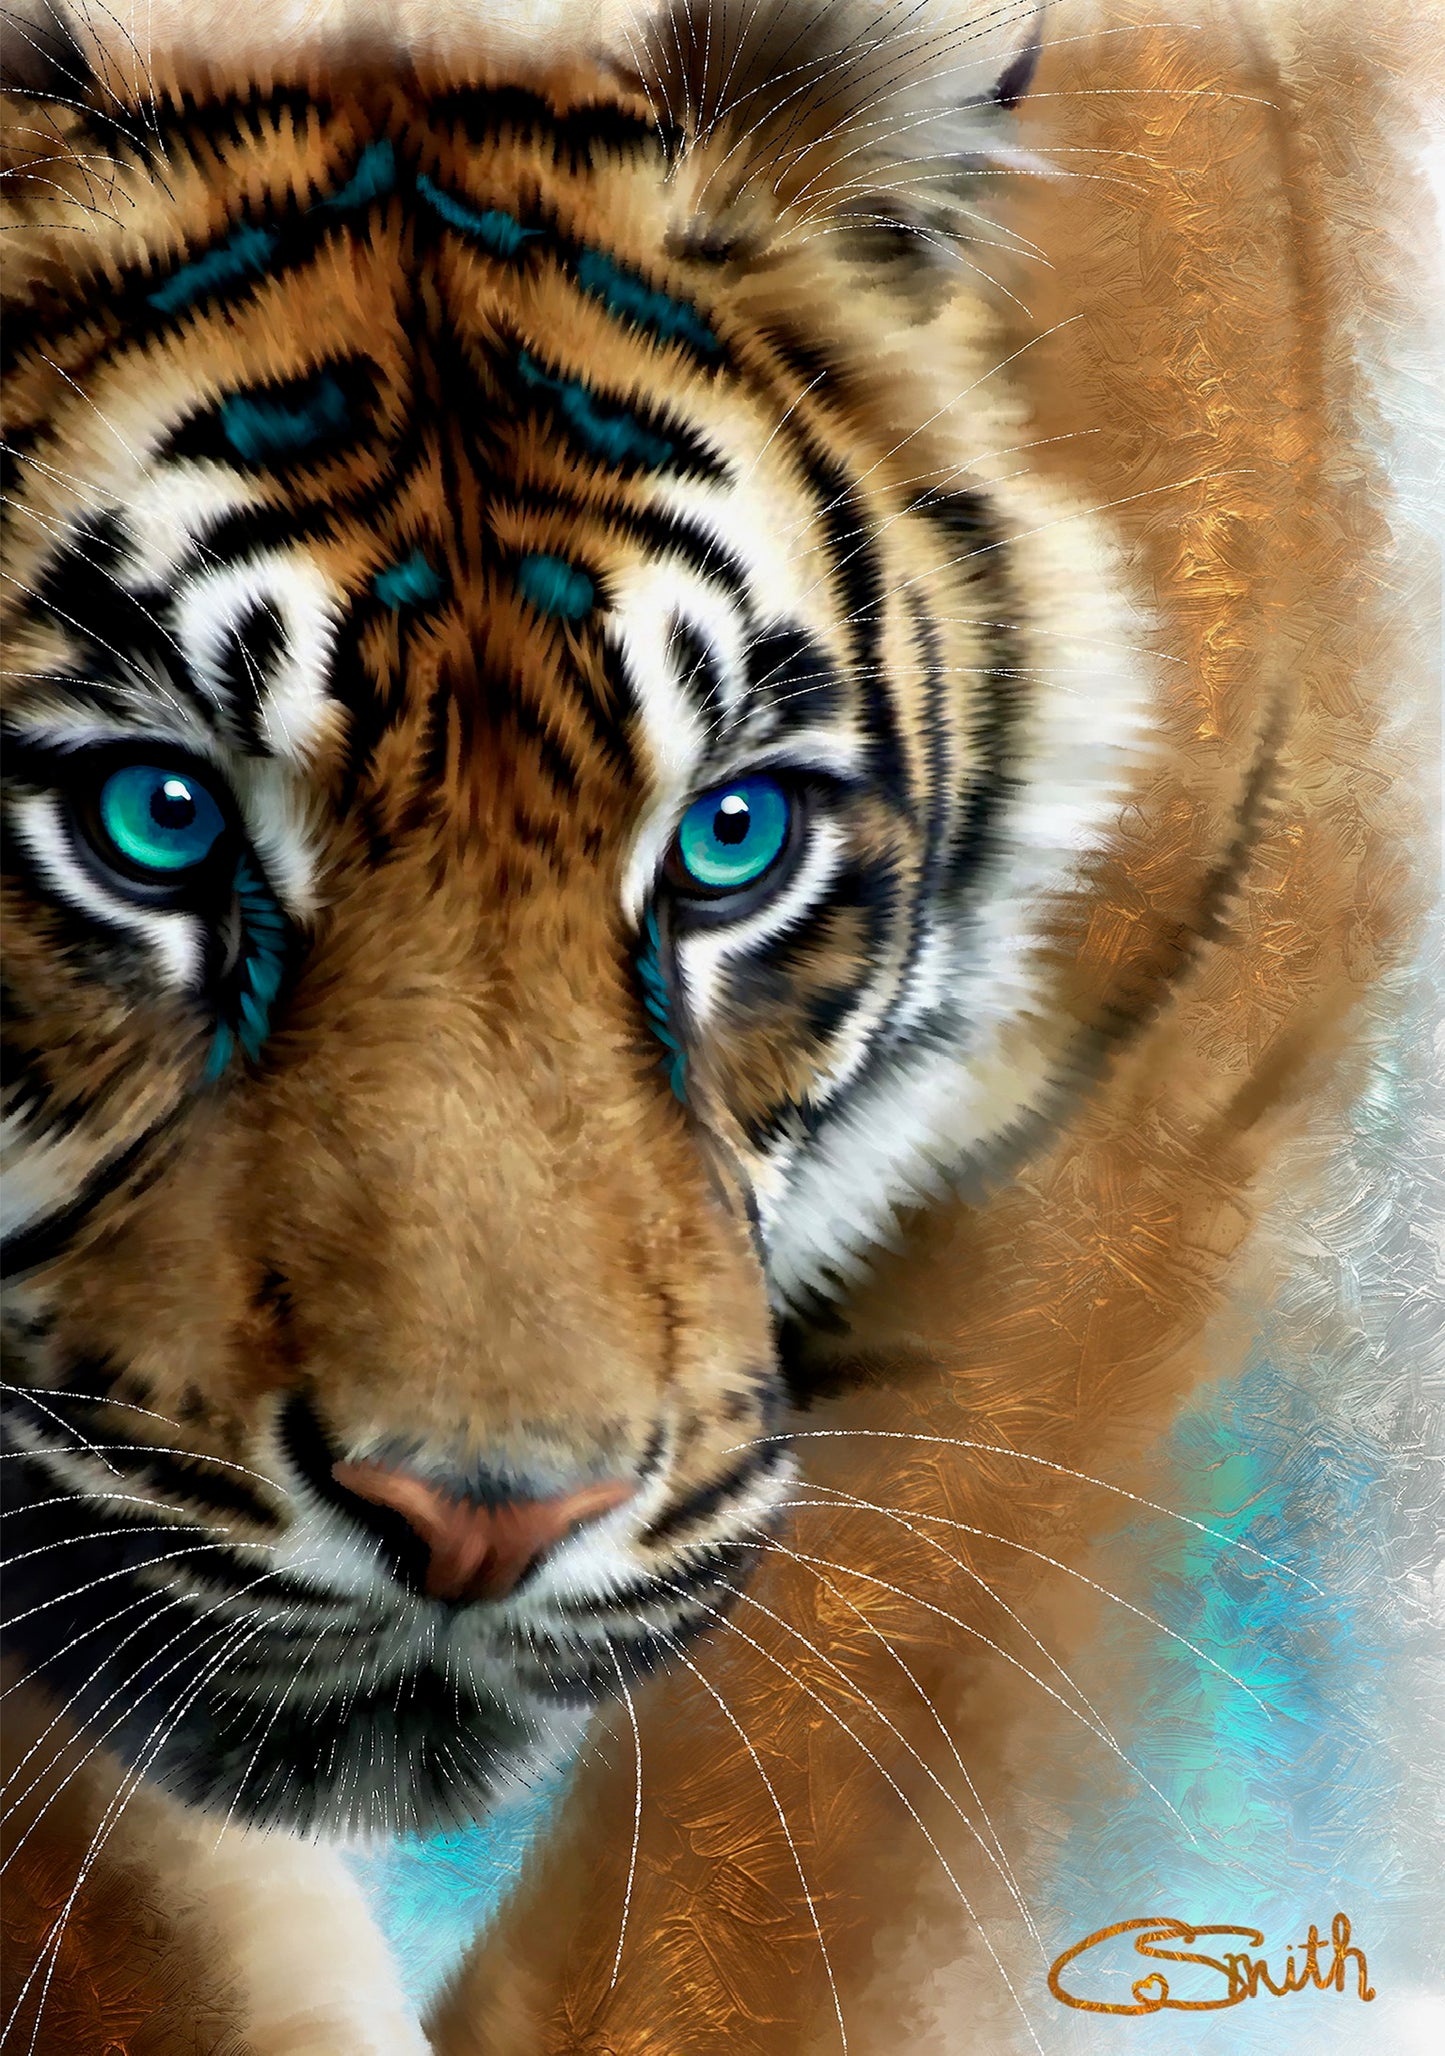 Wildlife Wild Animal Art Tiger Framed Print 14" x 11" (Matte Black or White Frame) Gift Idea